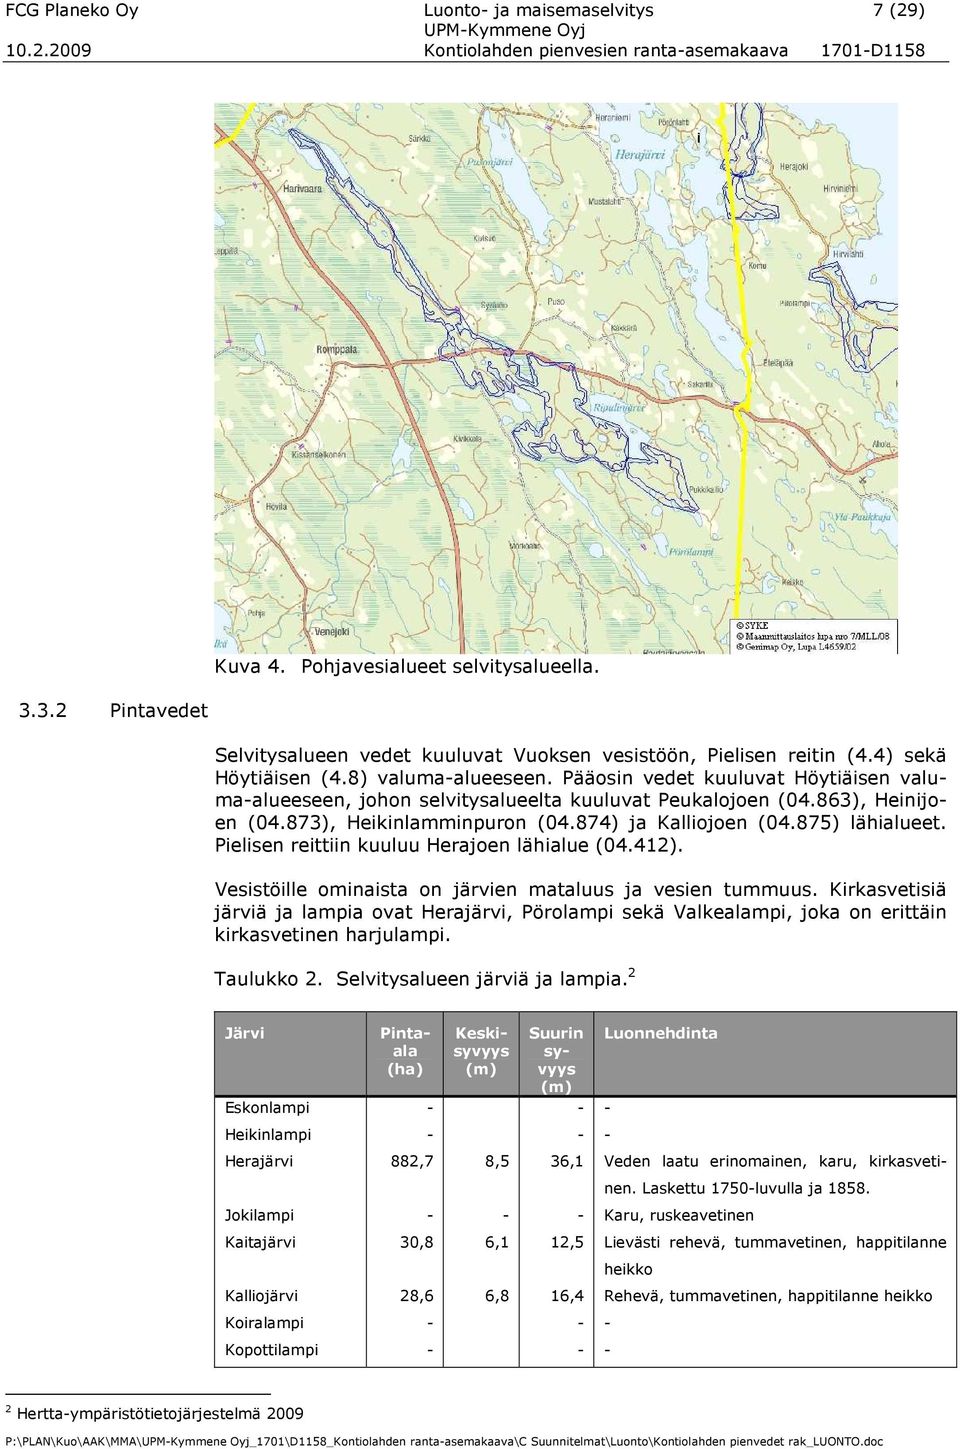 Pääosin vedet kuuluvat Höytiäisen valumaalueeseen, johon selvitysalueelta kuuluvat Peukalojoen (04.863), Heinijoen (04.873), Heikinlamminpuron (04.874) ja Kalliojoen (04.875) lähialueet.